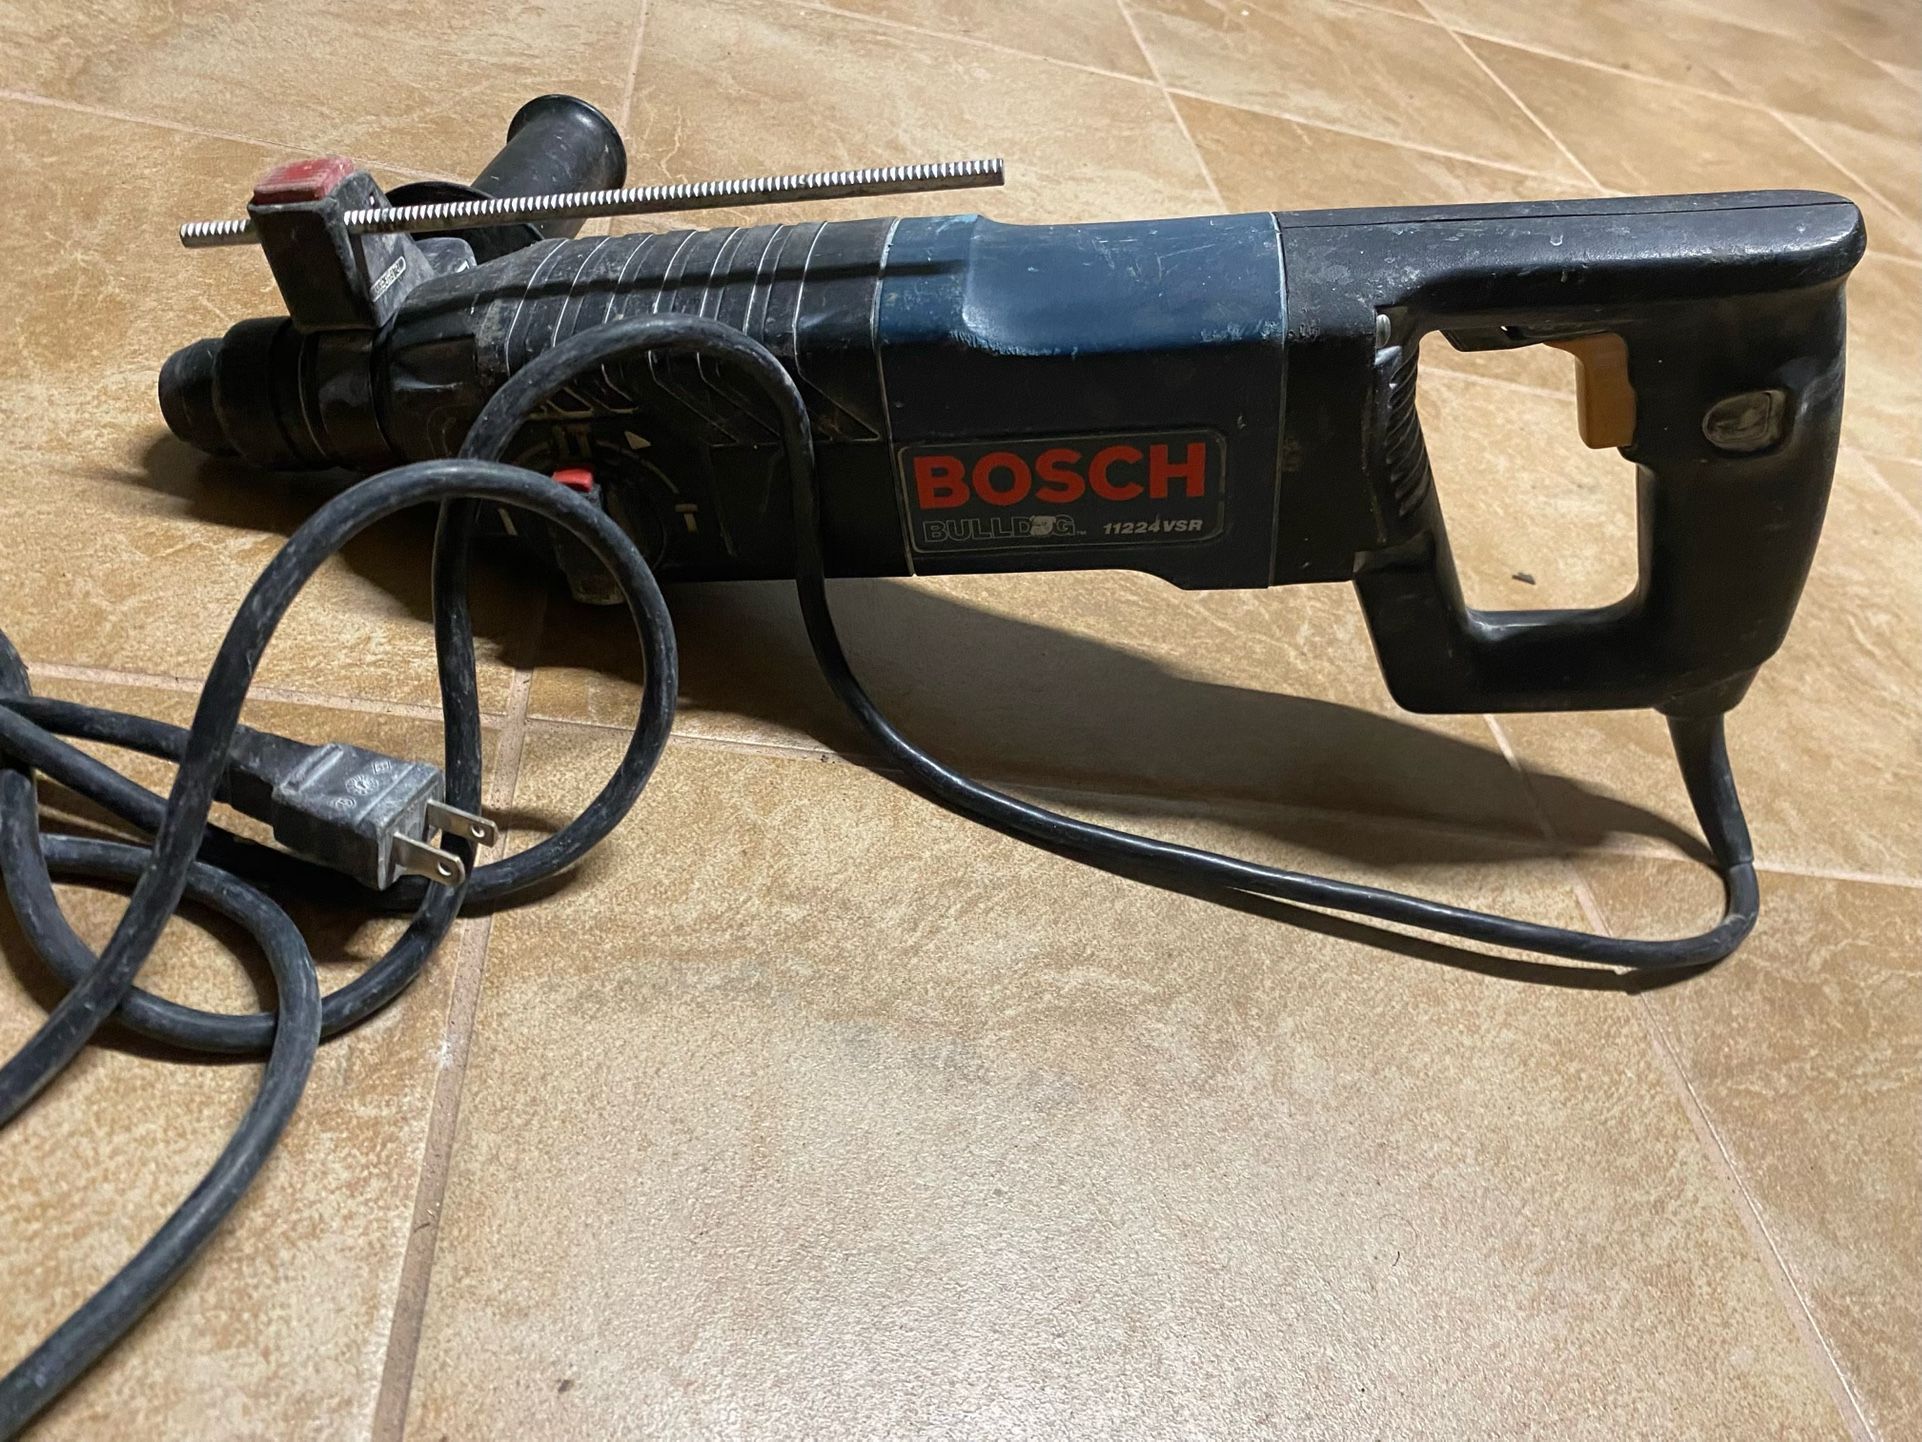 - Bosch Bulldog 11224VSR Rotary Hammer